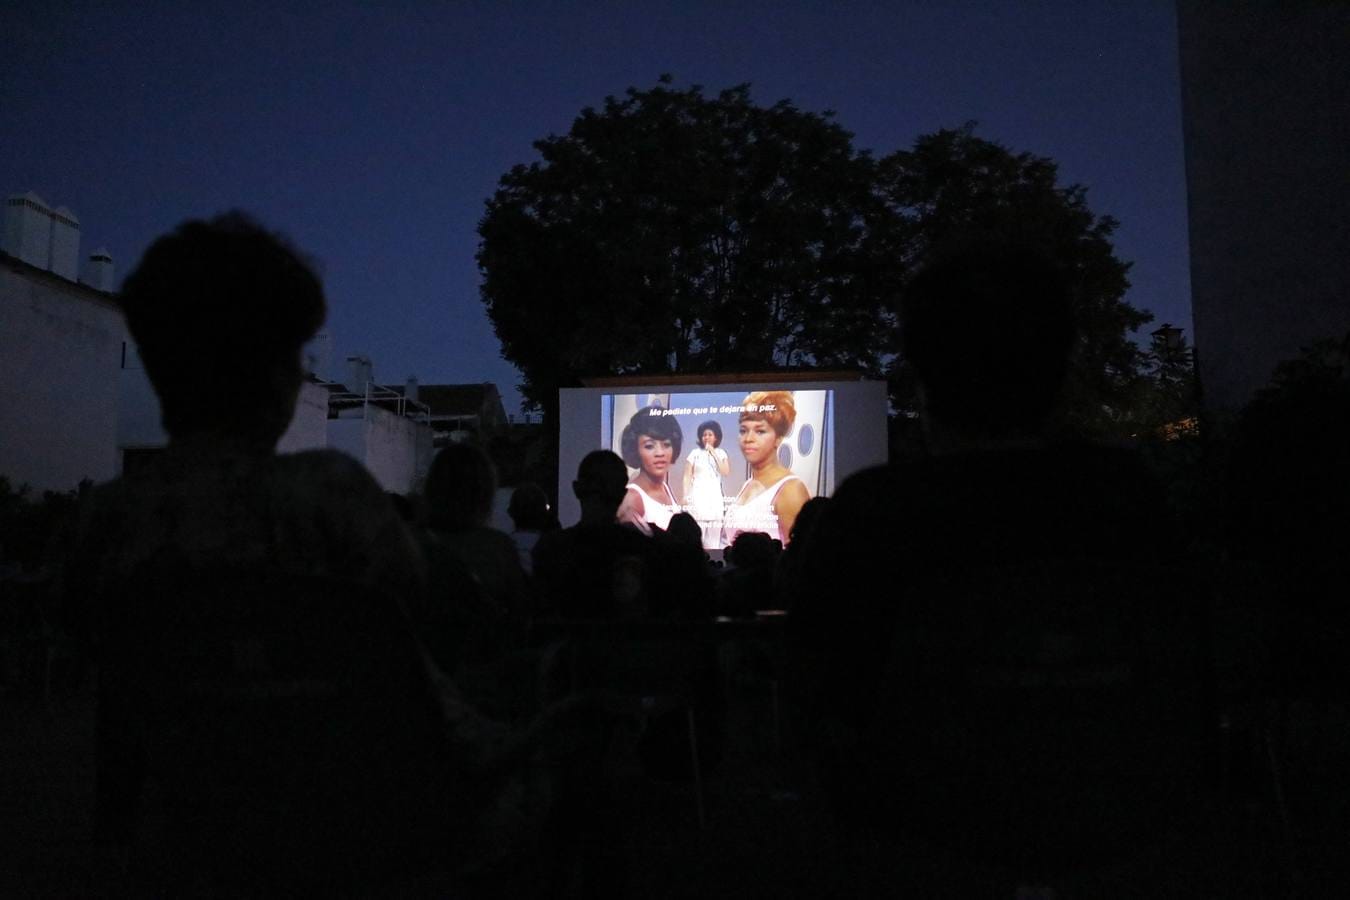 La apertura de los cines de verano en Córdoba, en imágenes